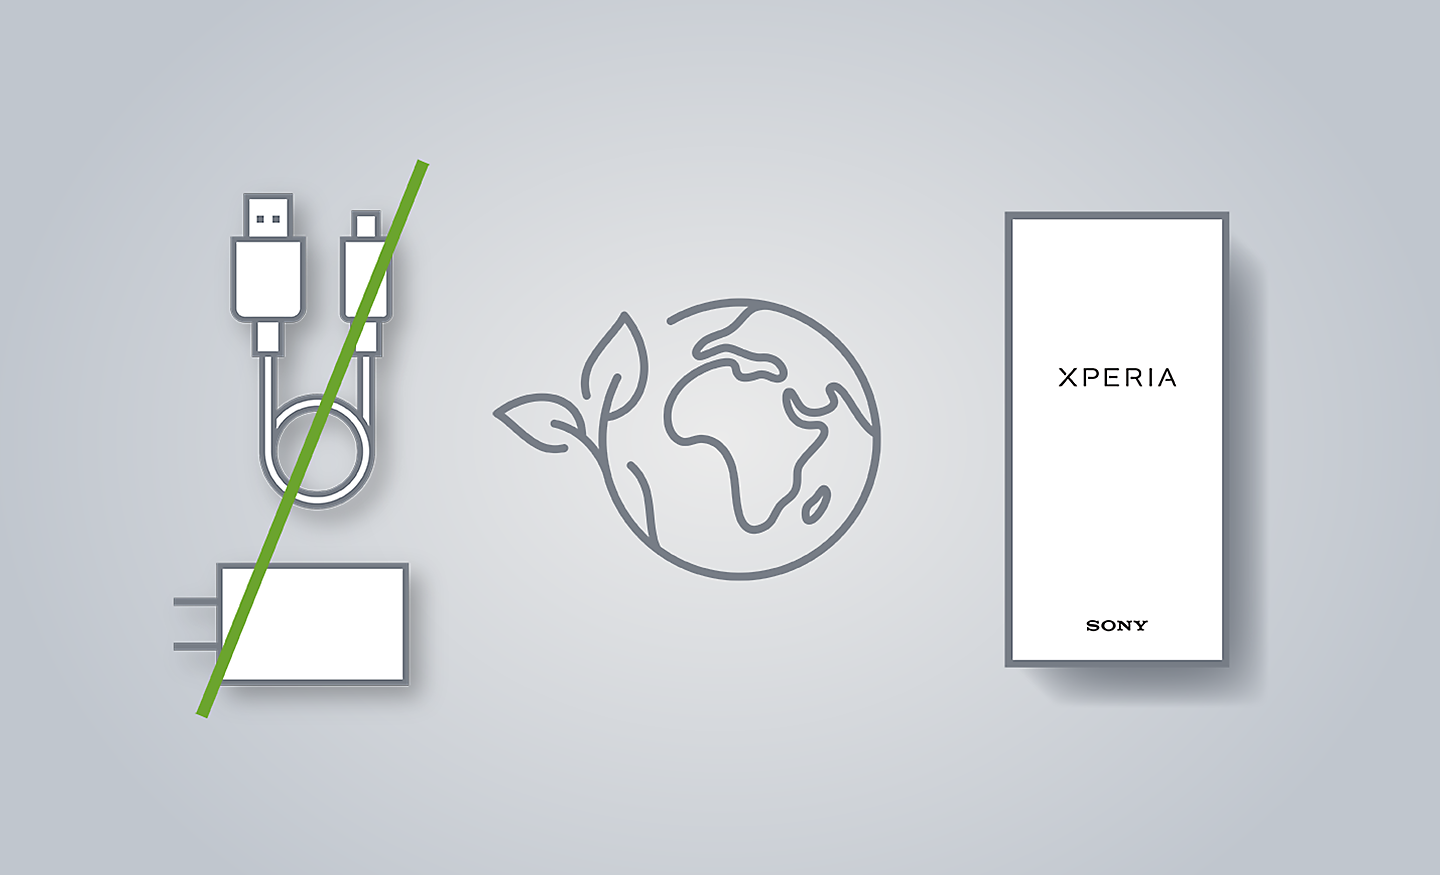 圖片展示 Xperia、世界圖示和被一條劃掉的充電器